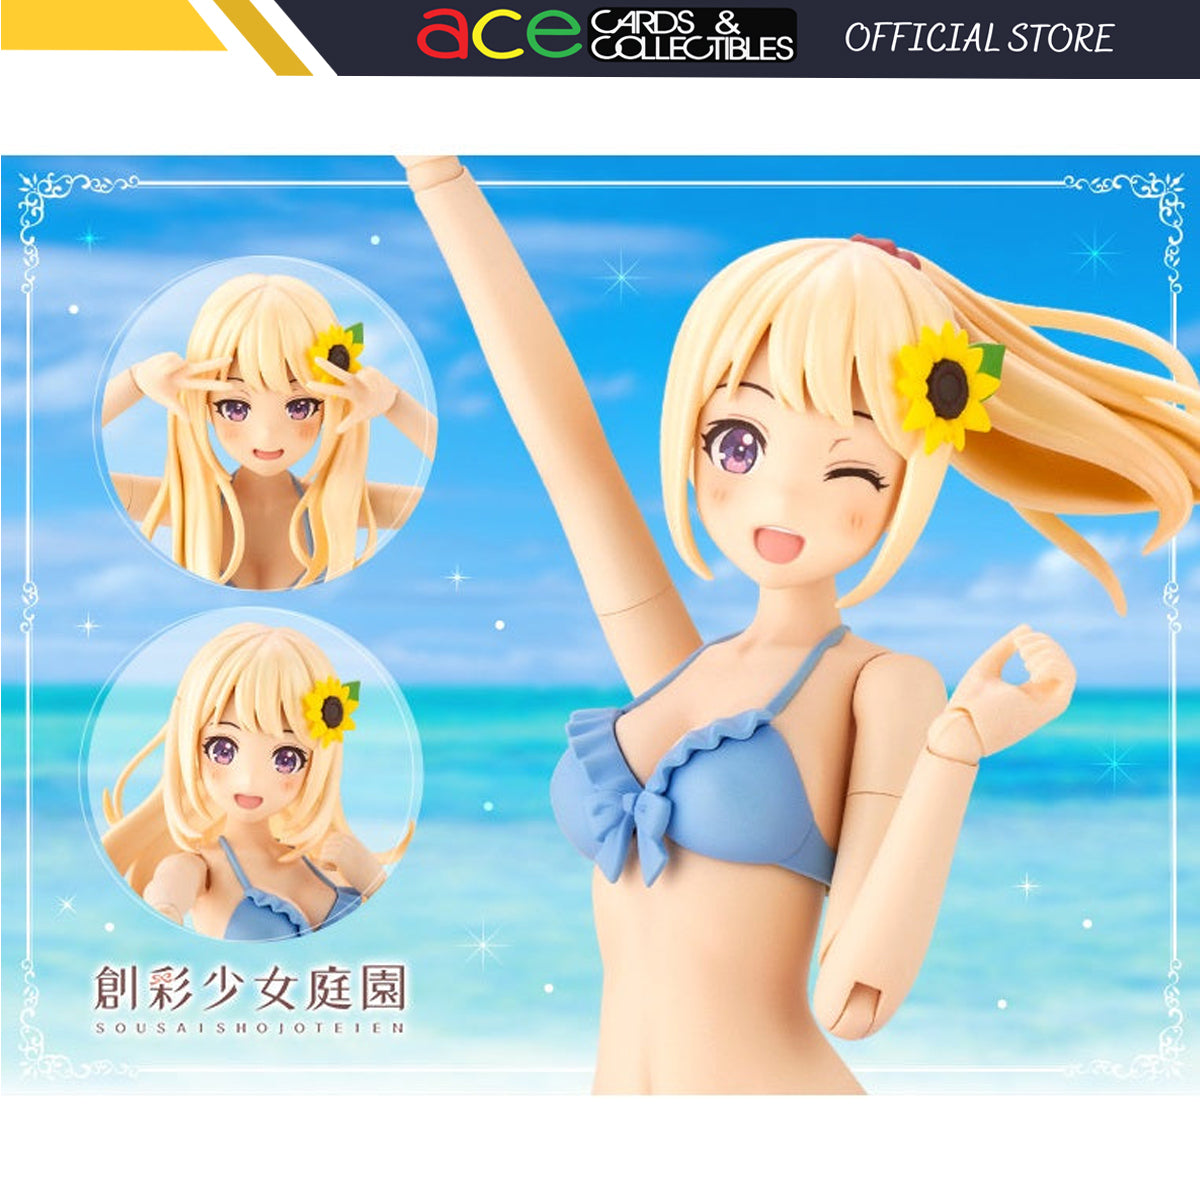 Sousaishojoteien "Madoka Yuki" Dreaming Style Sunny Sky (Swim Style)-Kotobukiya-Ace Cards & Collectibles